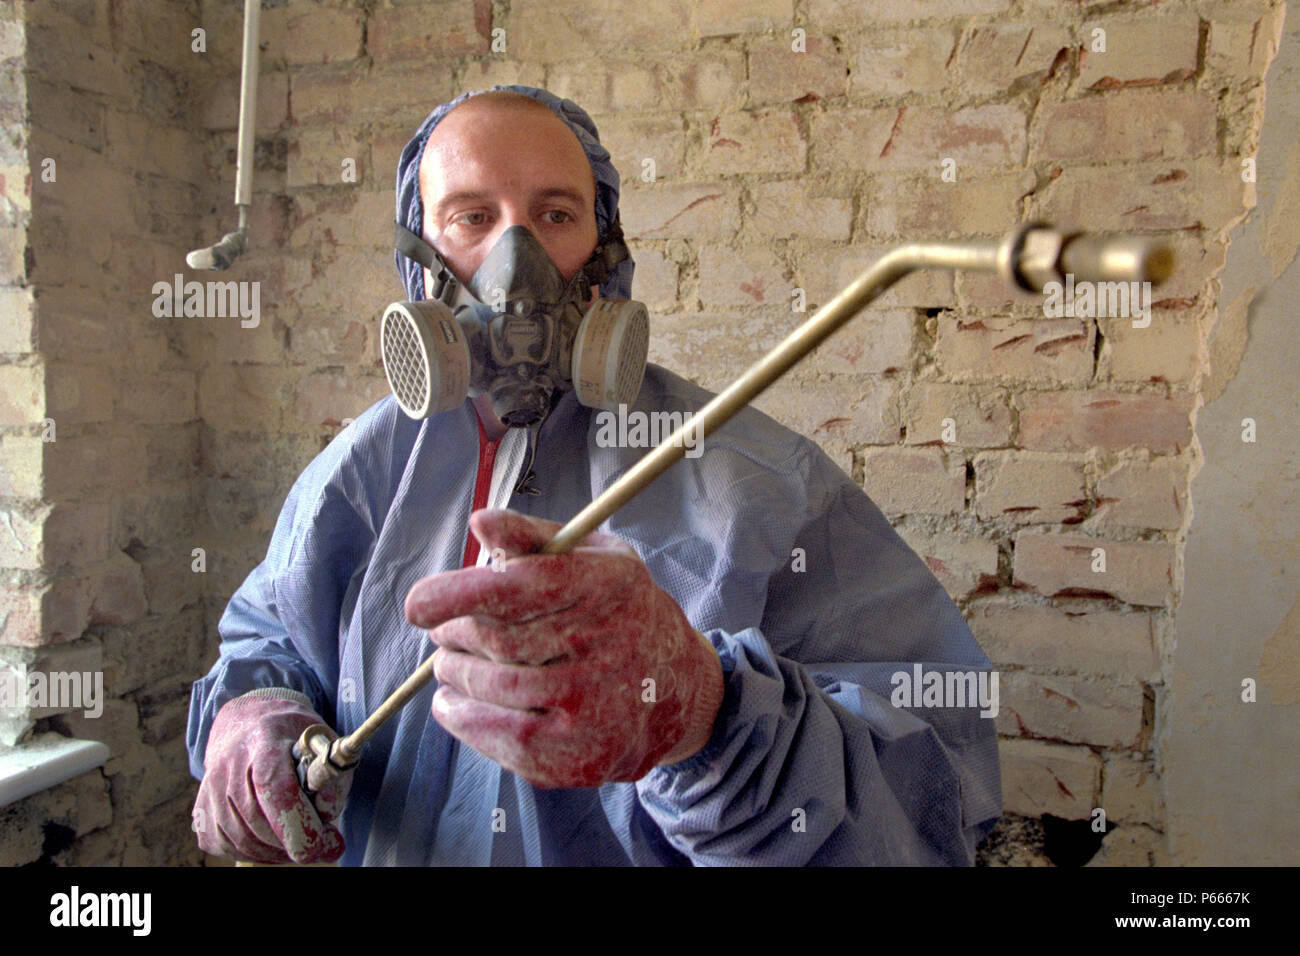 Impermeabilizzanti. L'applicazione di trattamenti chimici con una pistola a spruzzo. Foto Stock